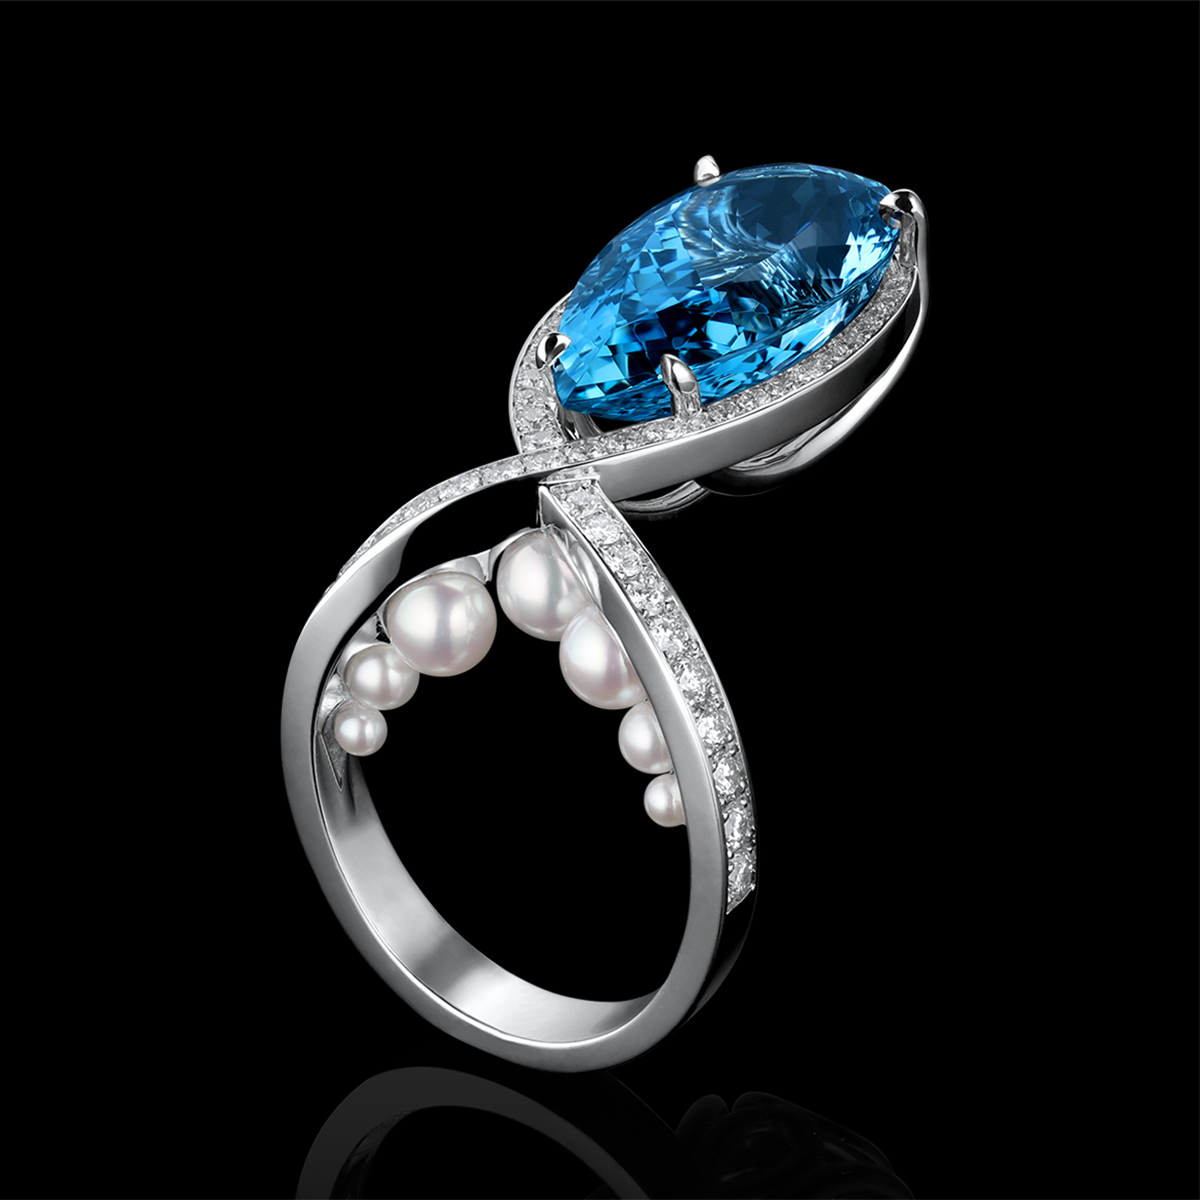 Aquamarine, Diamond, Pearl & Platinum Ring | Fantasia - AGTA Spectrum 2023